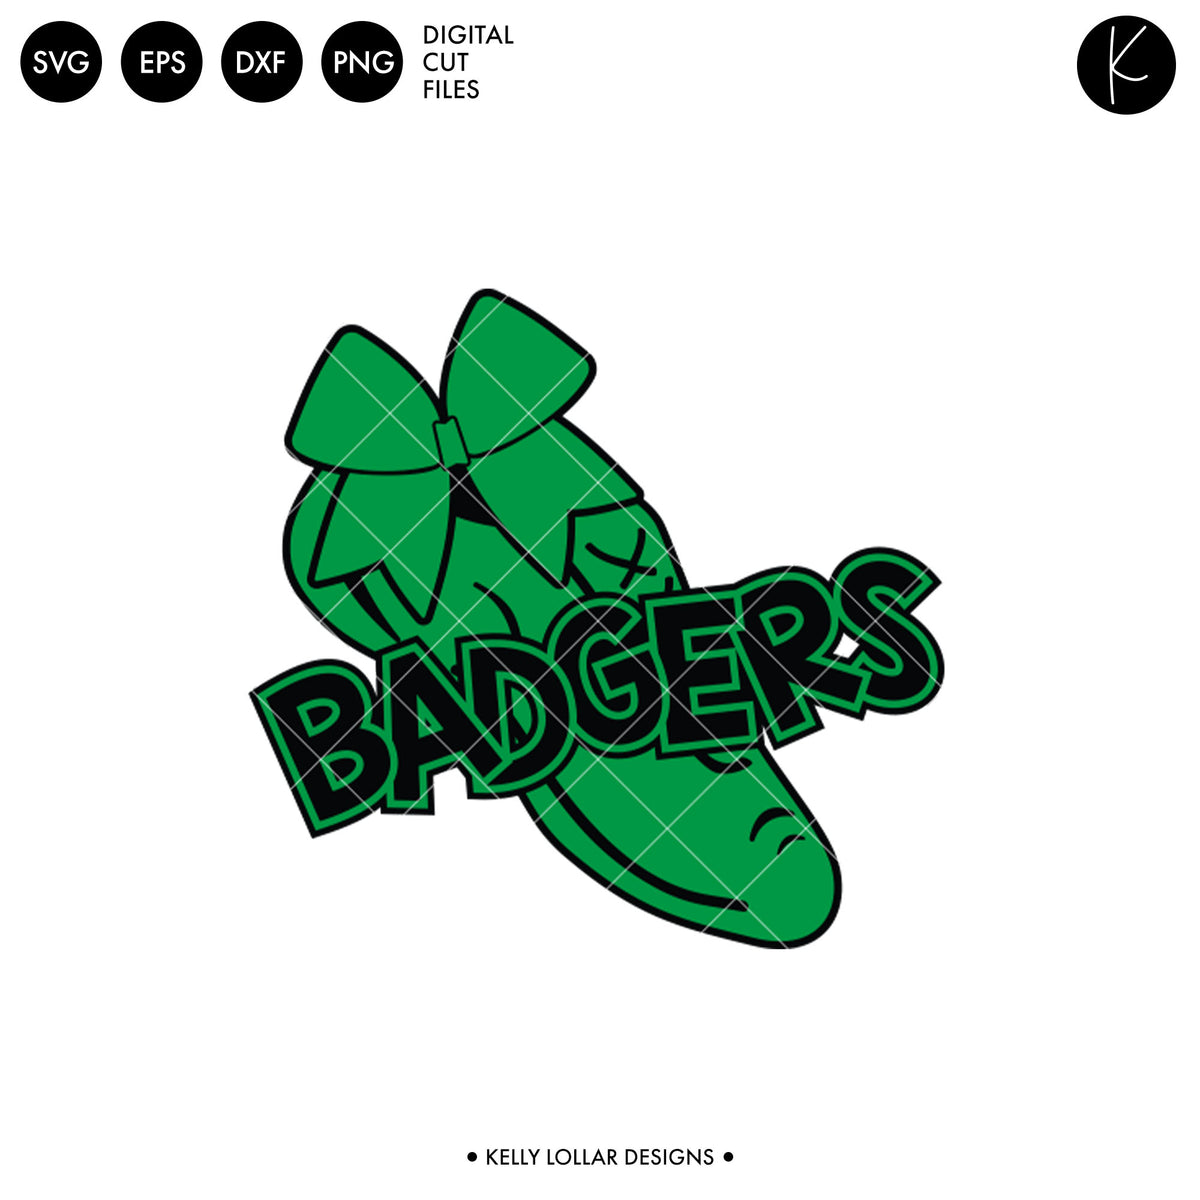 Badgers Dance Bundle | SVG DXF EPS PNG Cut Files